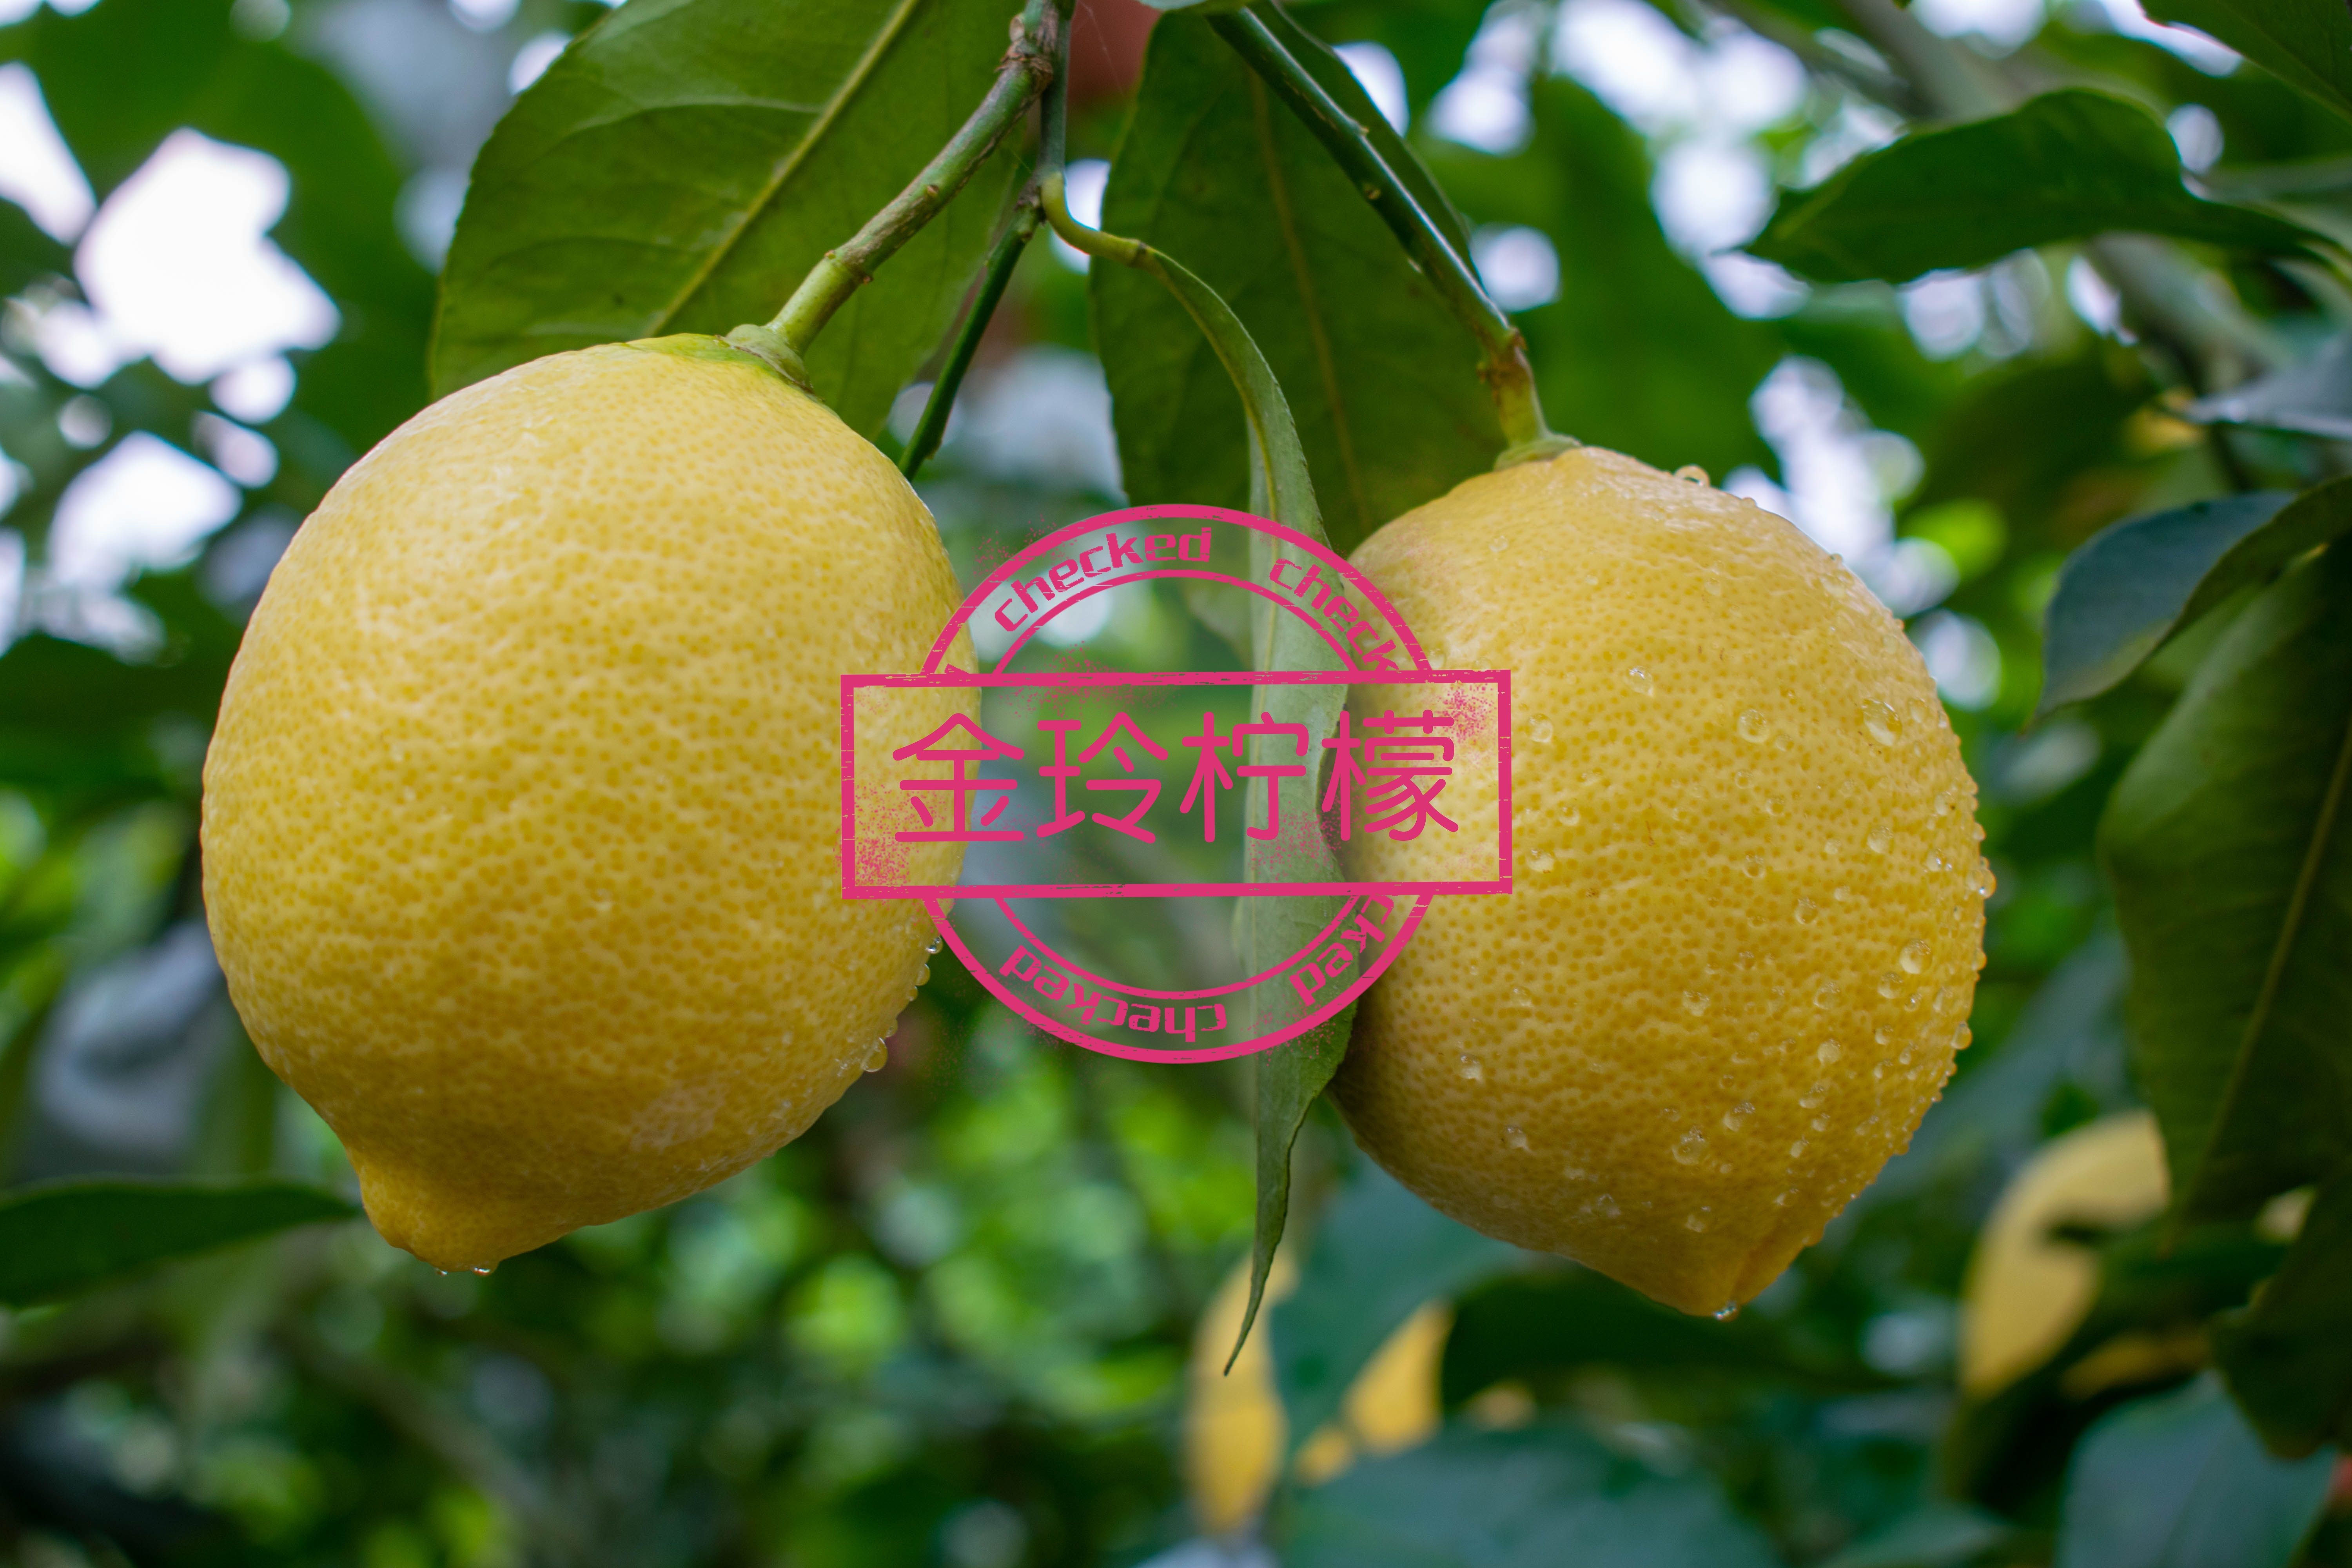 安岳县尤力克柠檬 安岳黄柠檬1.2级果、果园产地直销、新鲜多汁。